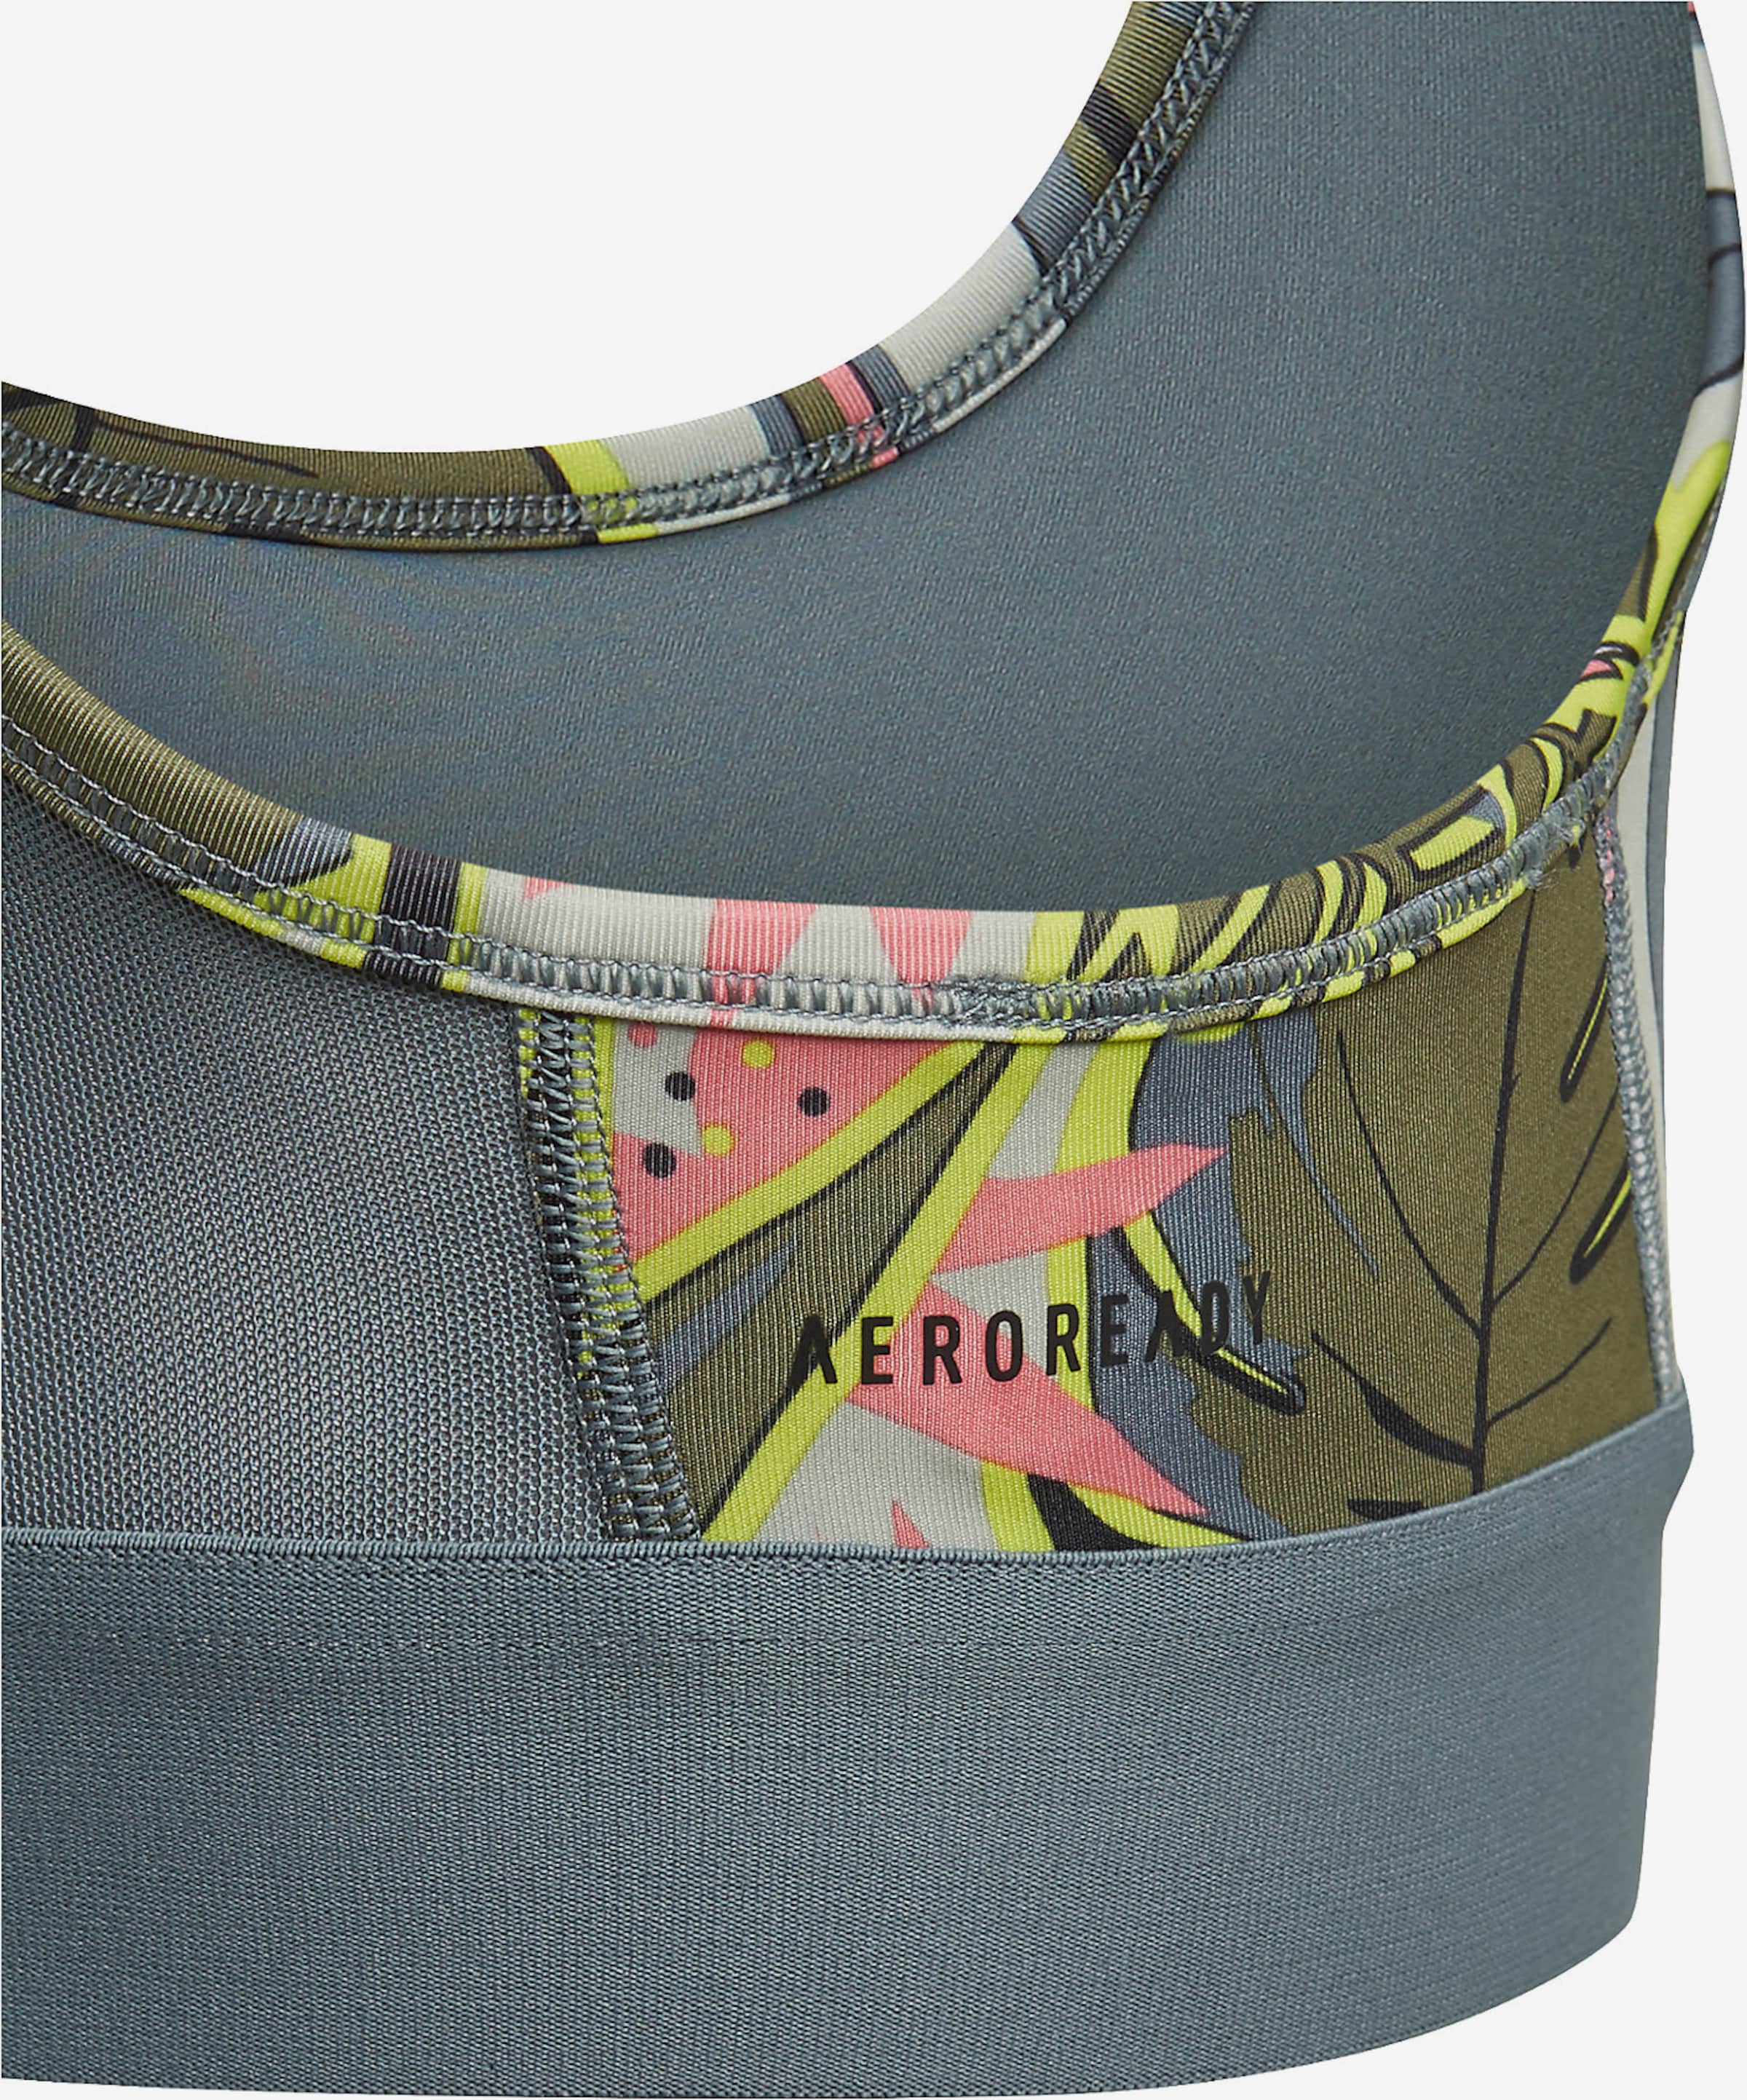 ADIDAS PERFORMANCE Bralette Performance Underwear in Khaki, Neon Green